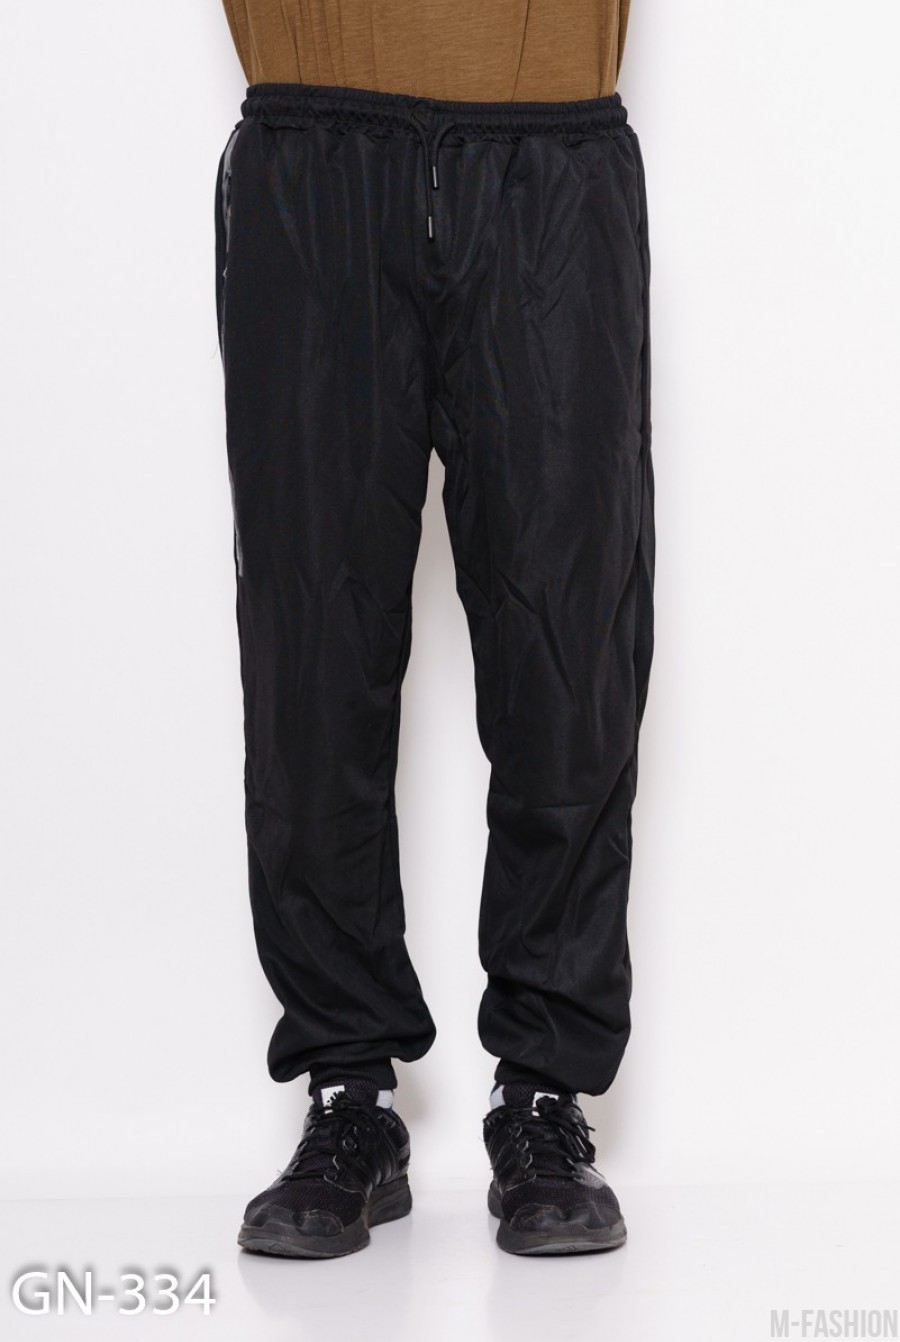 Черные свободные штаны на манжетах с декоративной вставкой на кармане с молнией - Фото 1